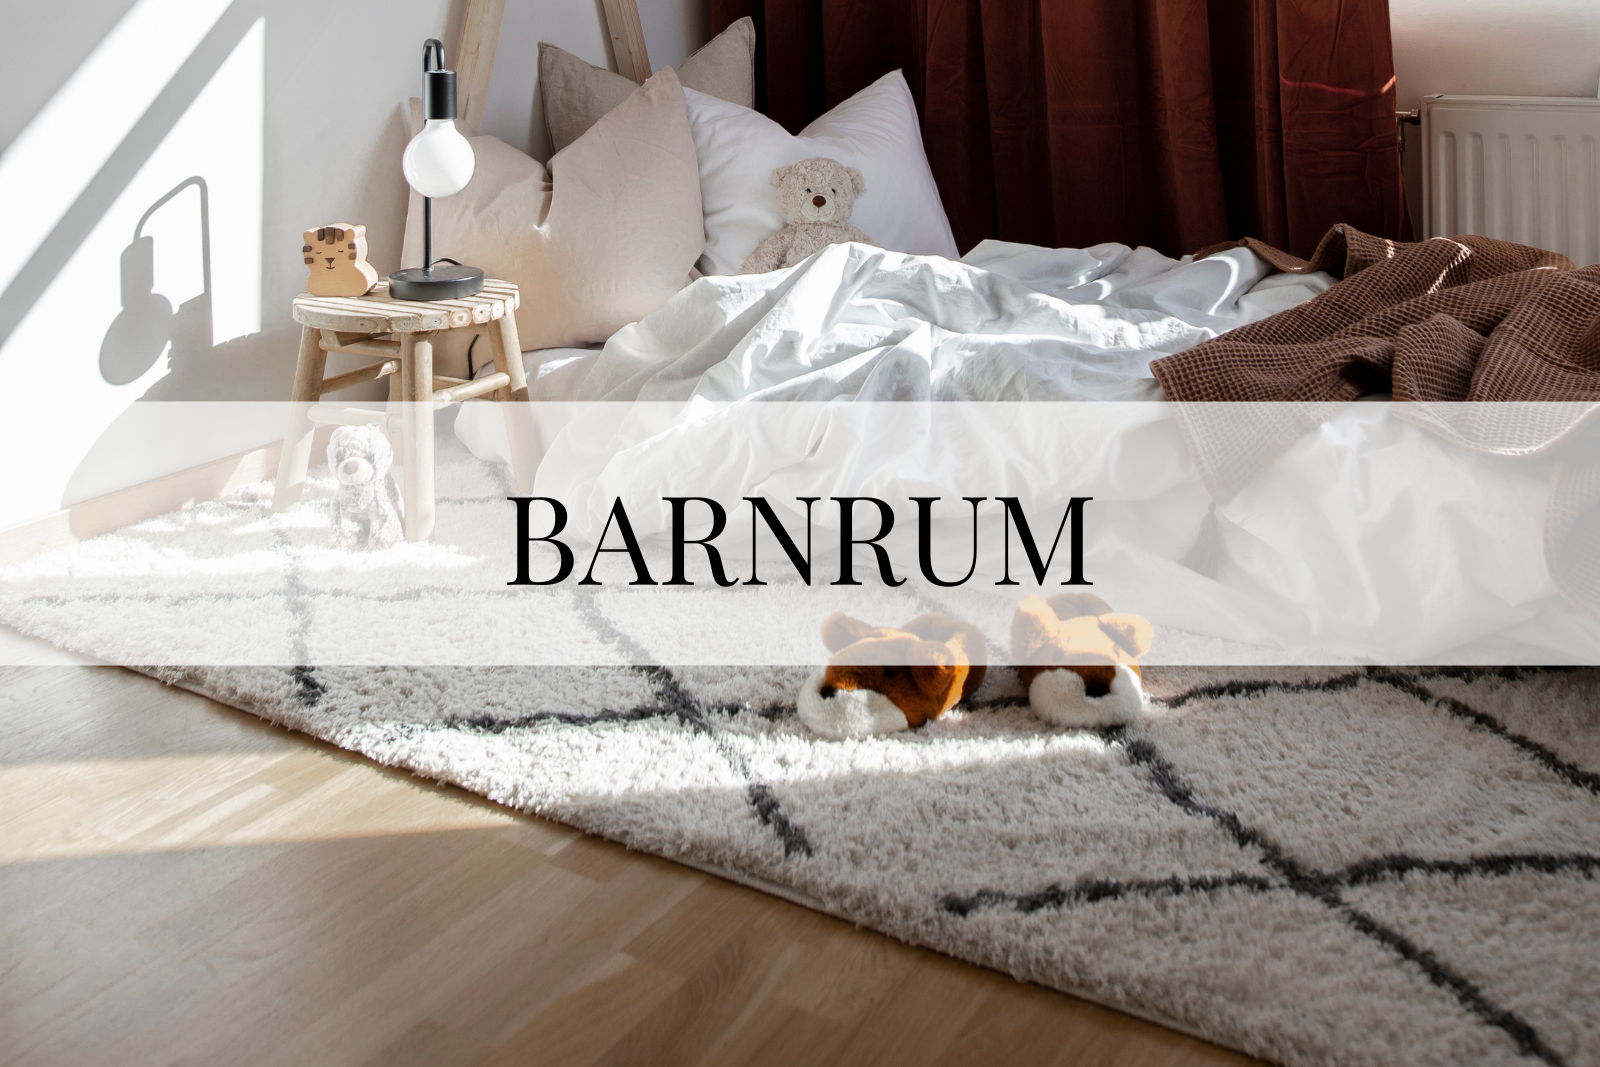 Barnrum